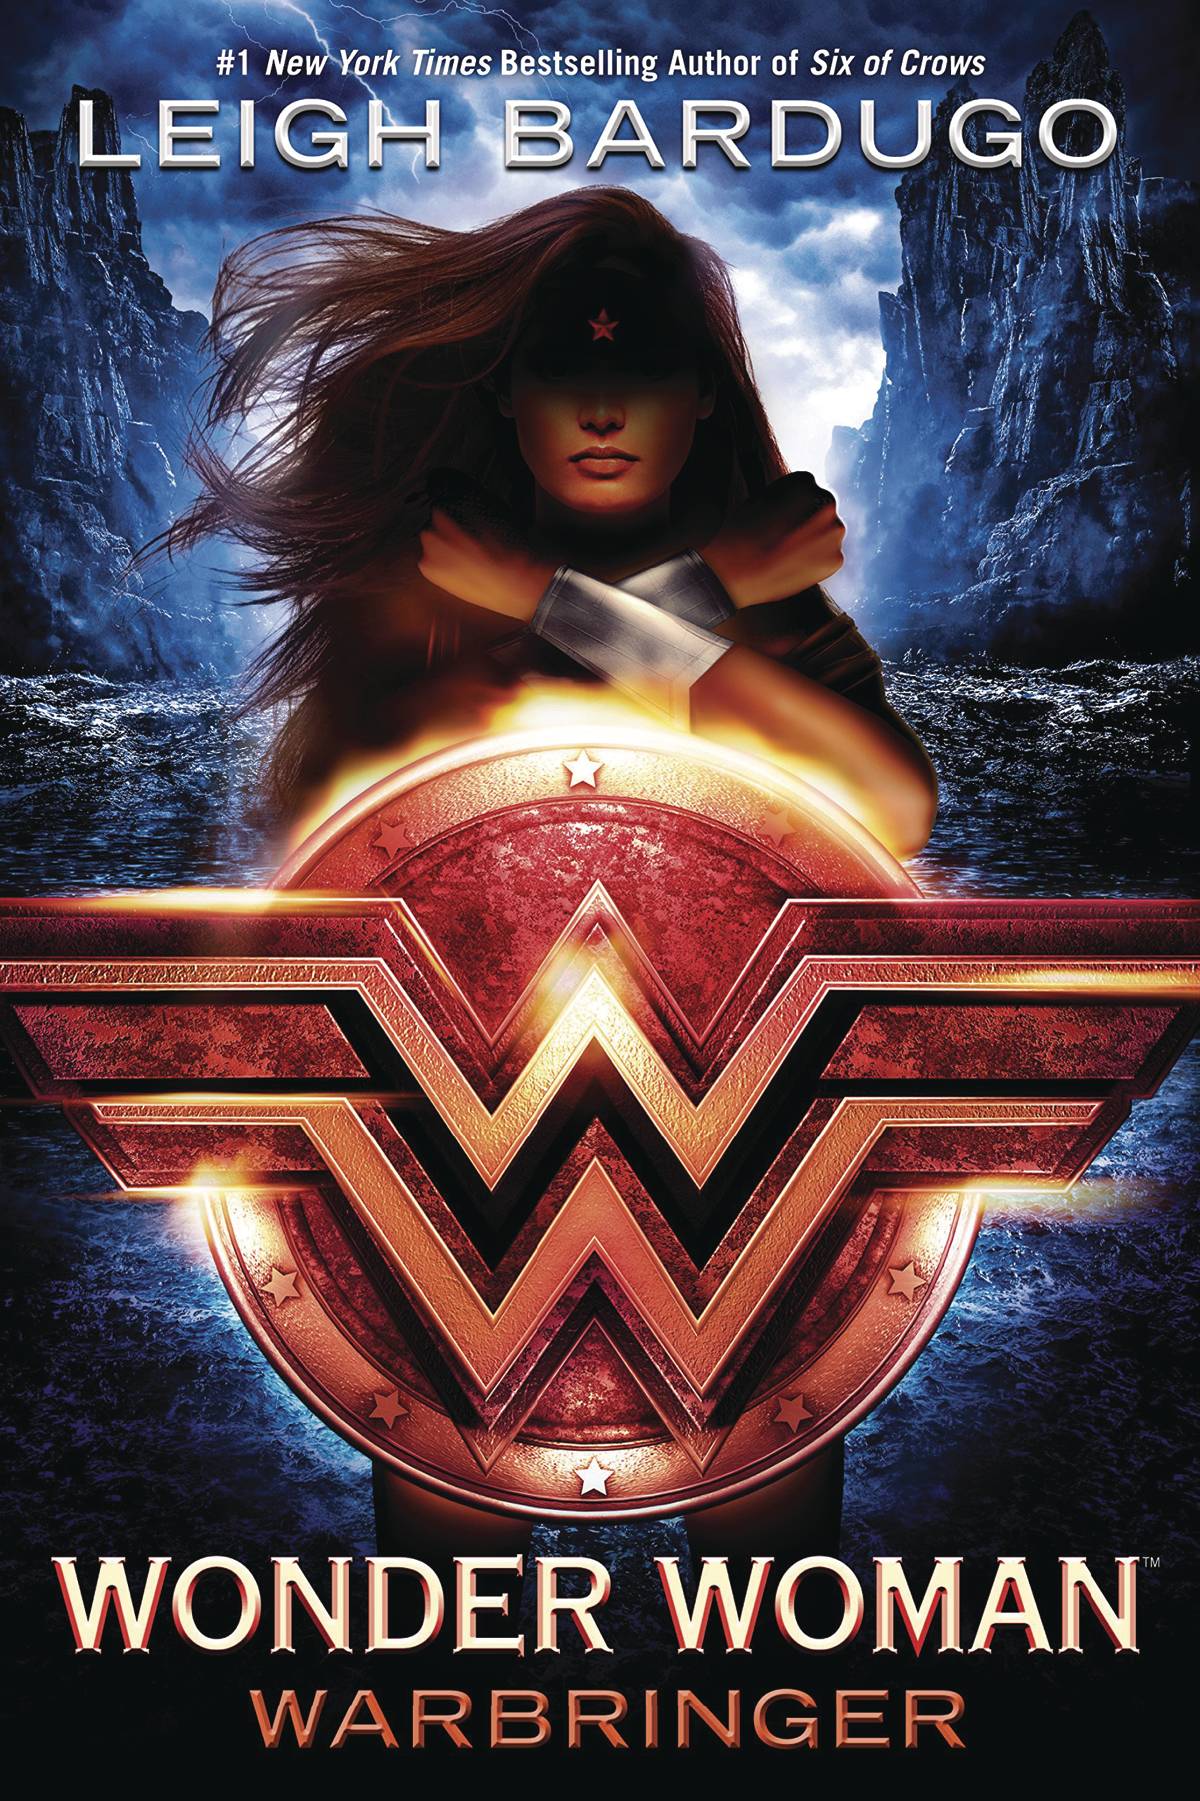 Wonder Woman Warbringer Hardcover Novel